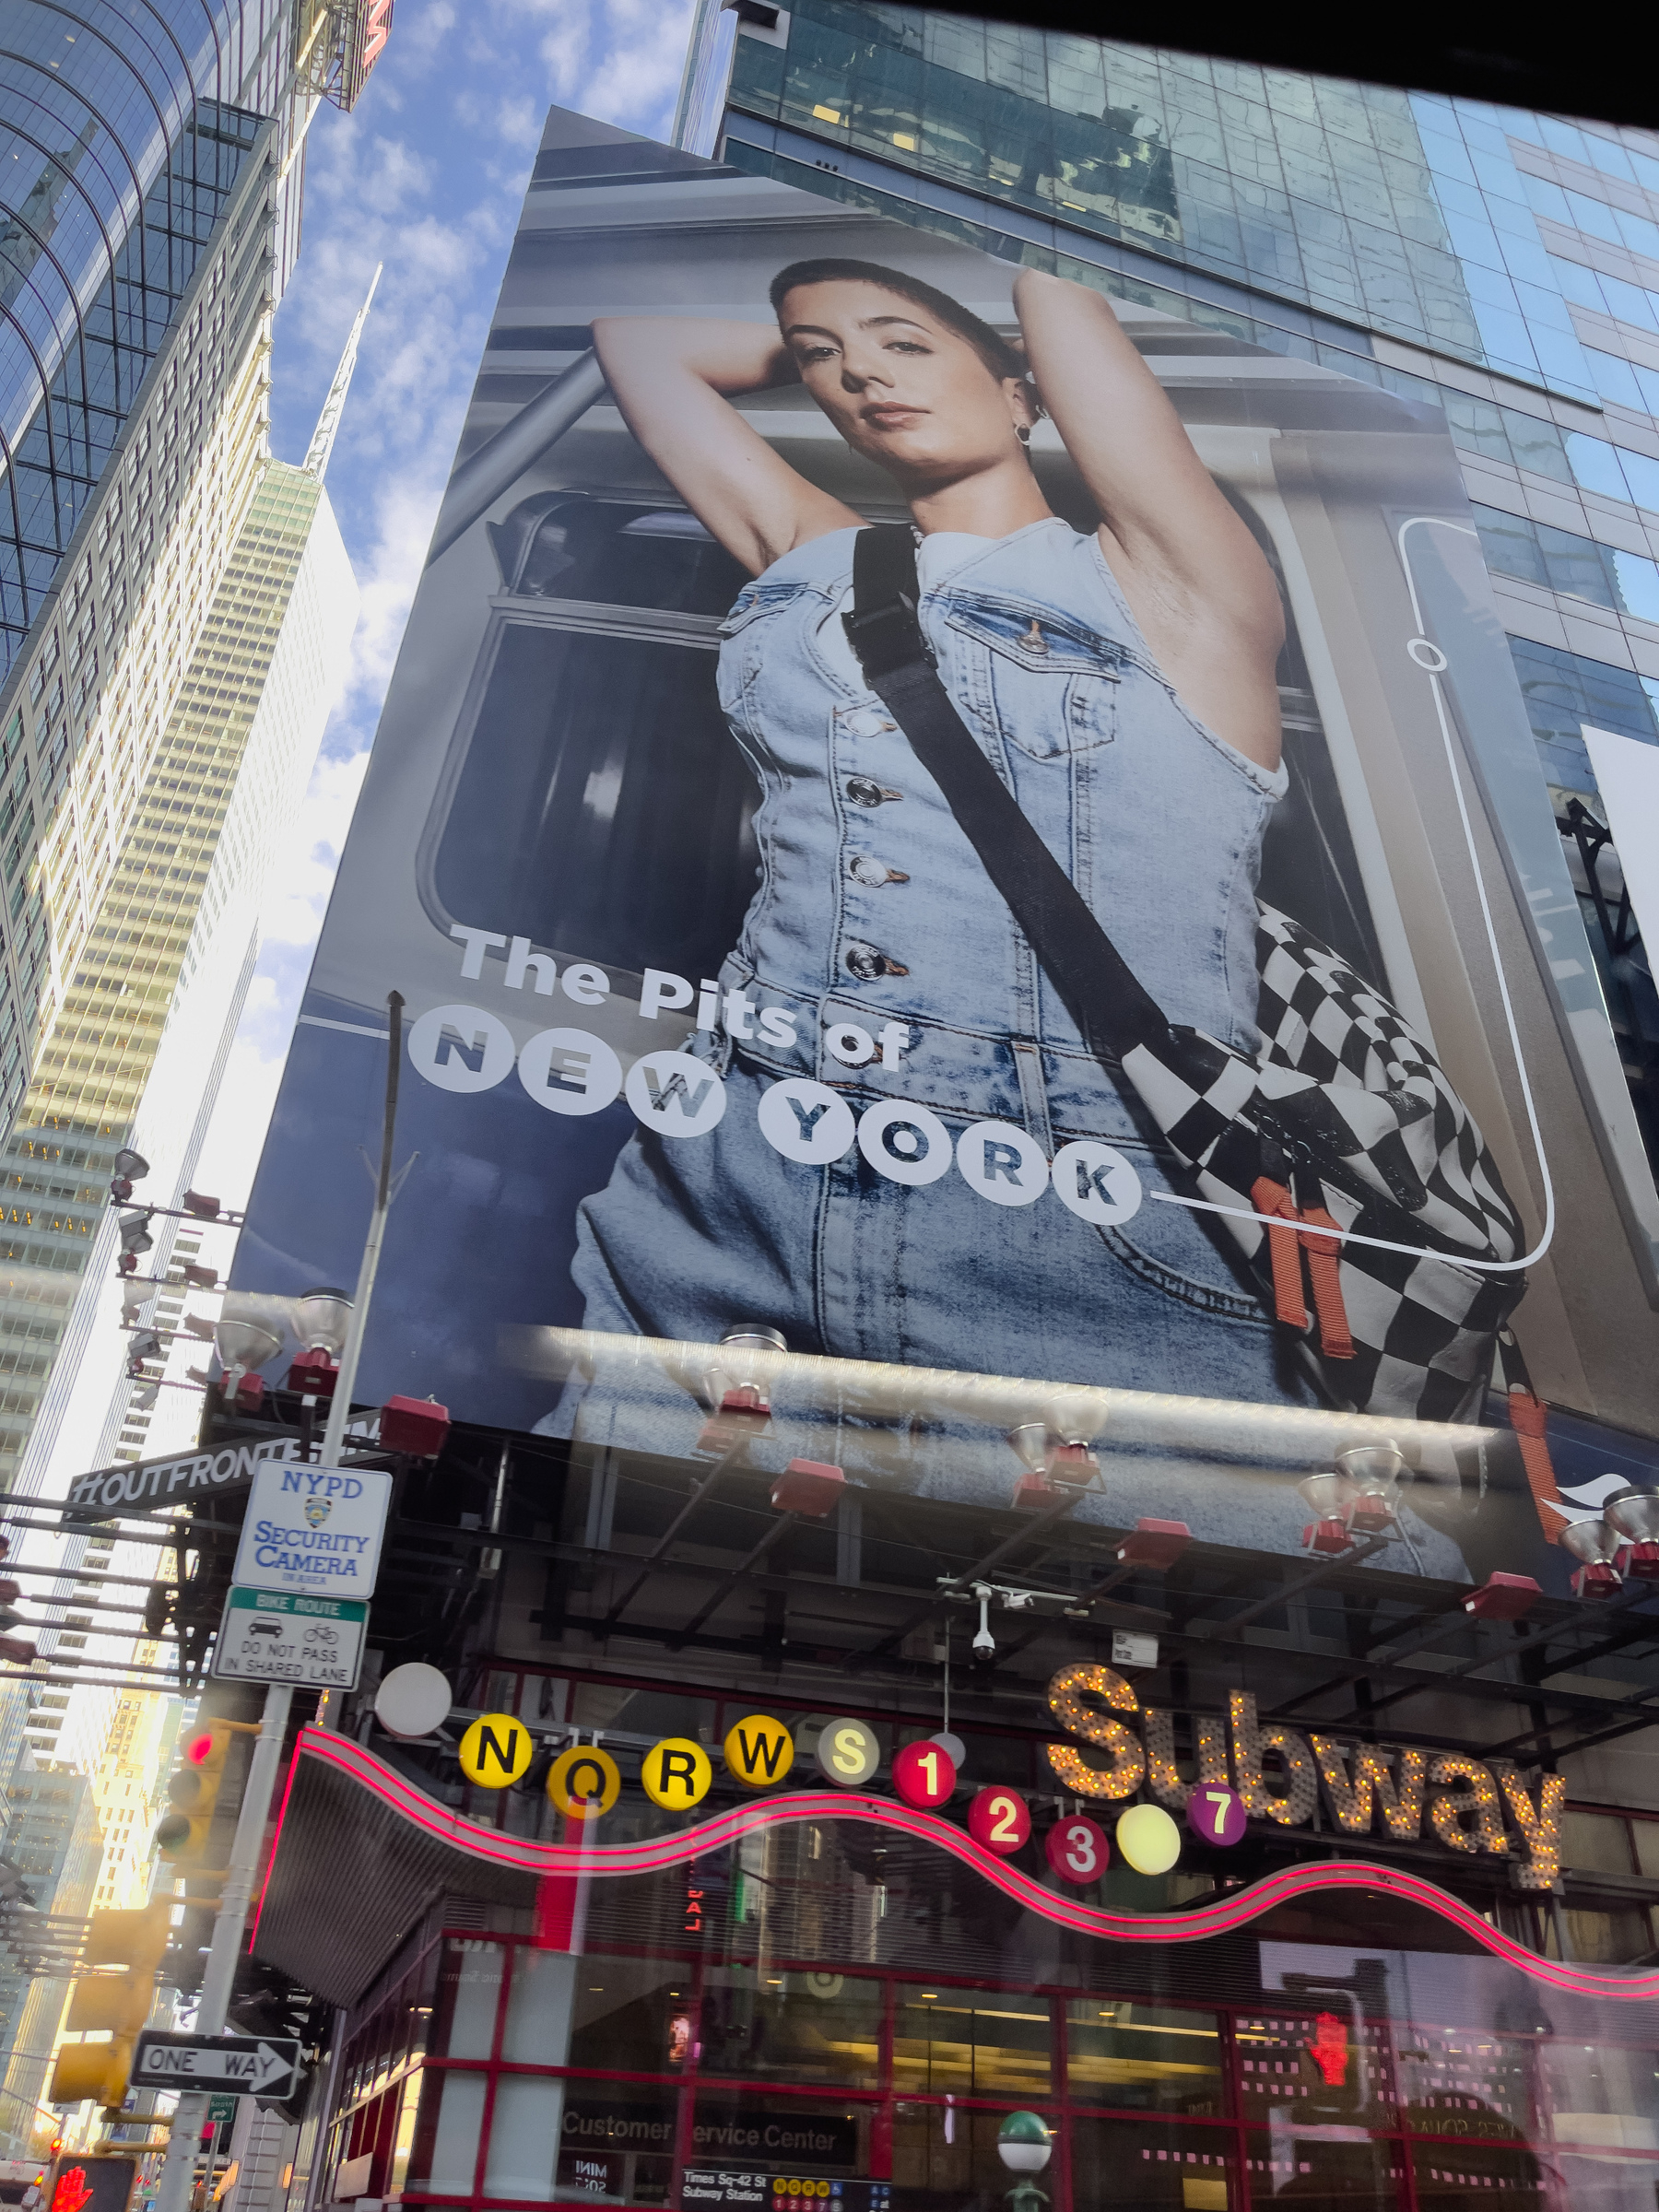 Women’s armpit campaign billboard in time square.